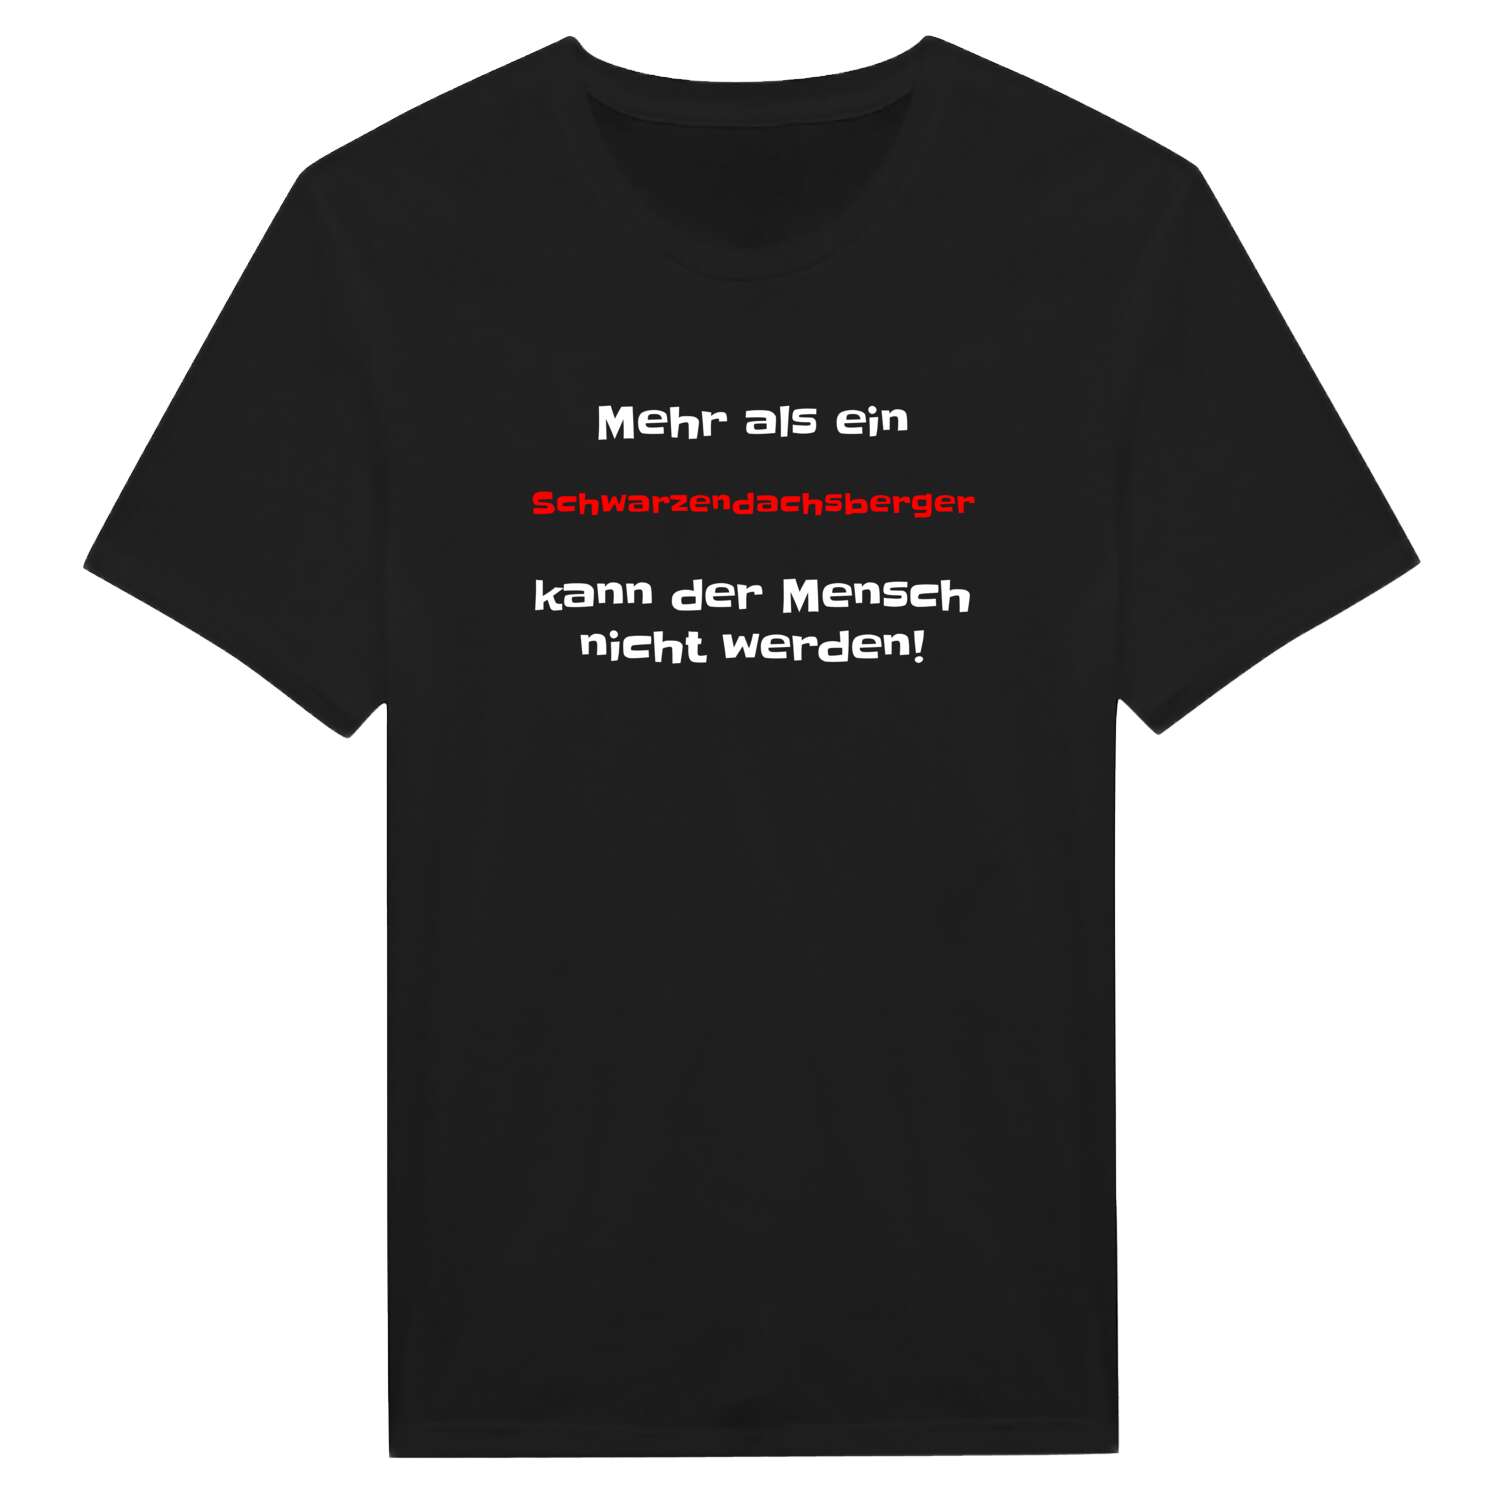 Schwarzendachsberg T-Shirt »Mehr als ein«